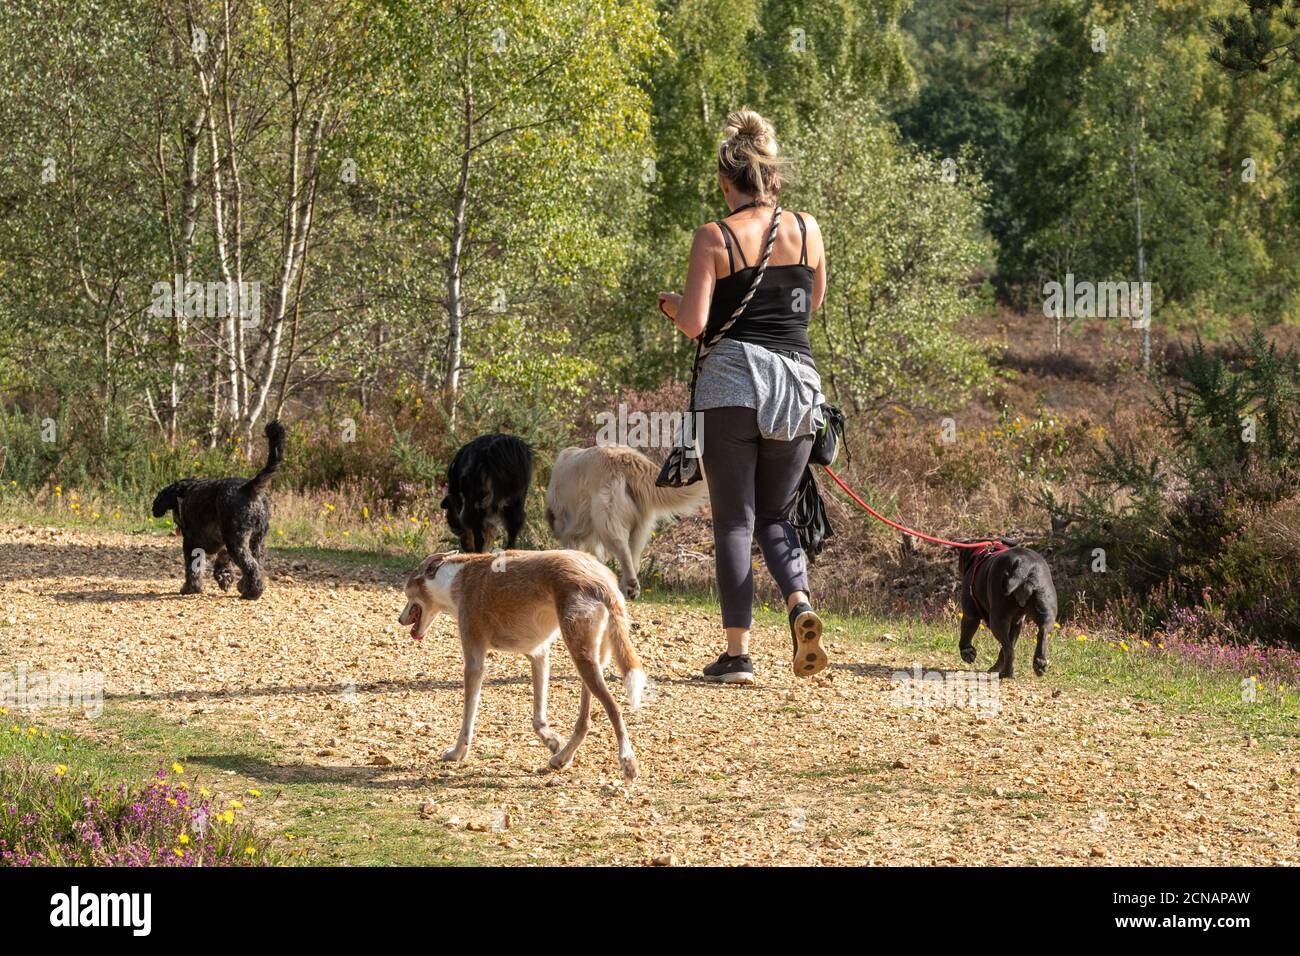 Promeneur professionnel de chiens prenant beaucoup de chiens pour une promenade dans la campagne, Angleterre, Royaume-Uni Banque D'Images